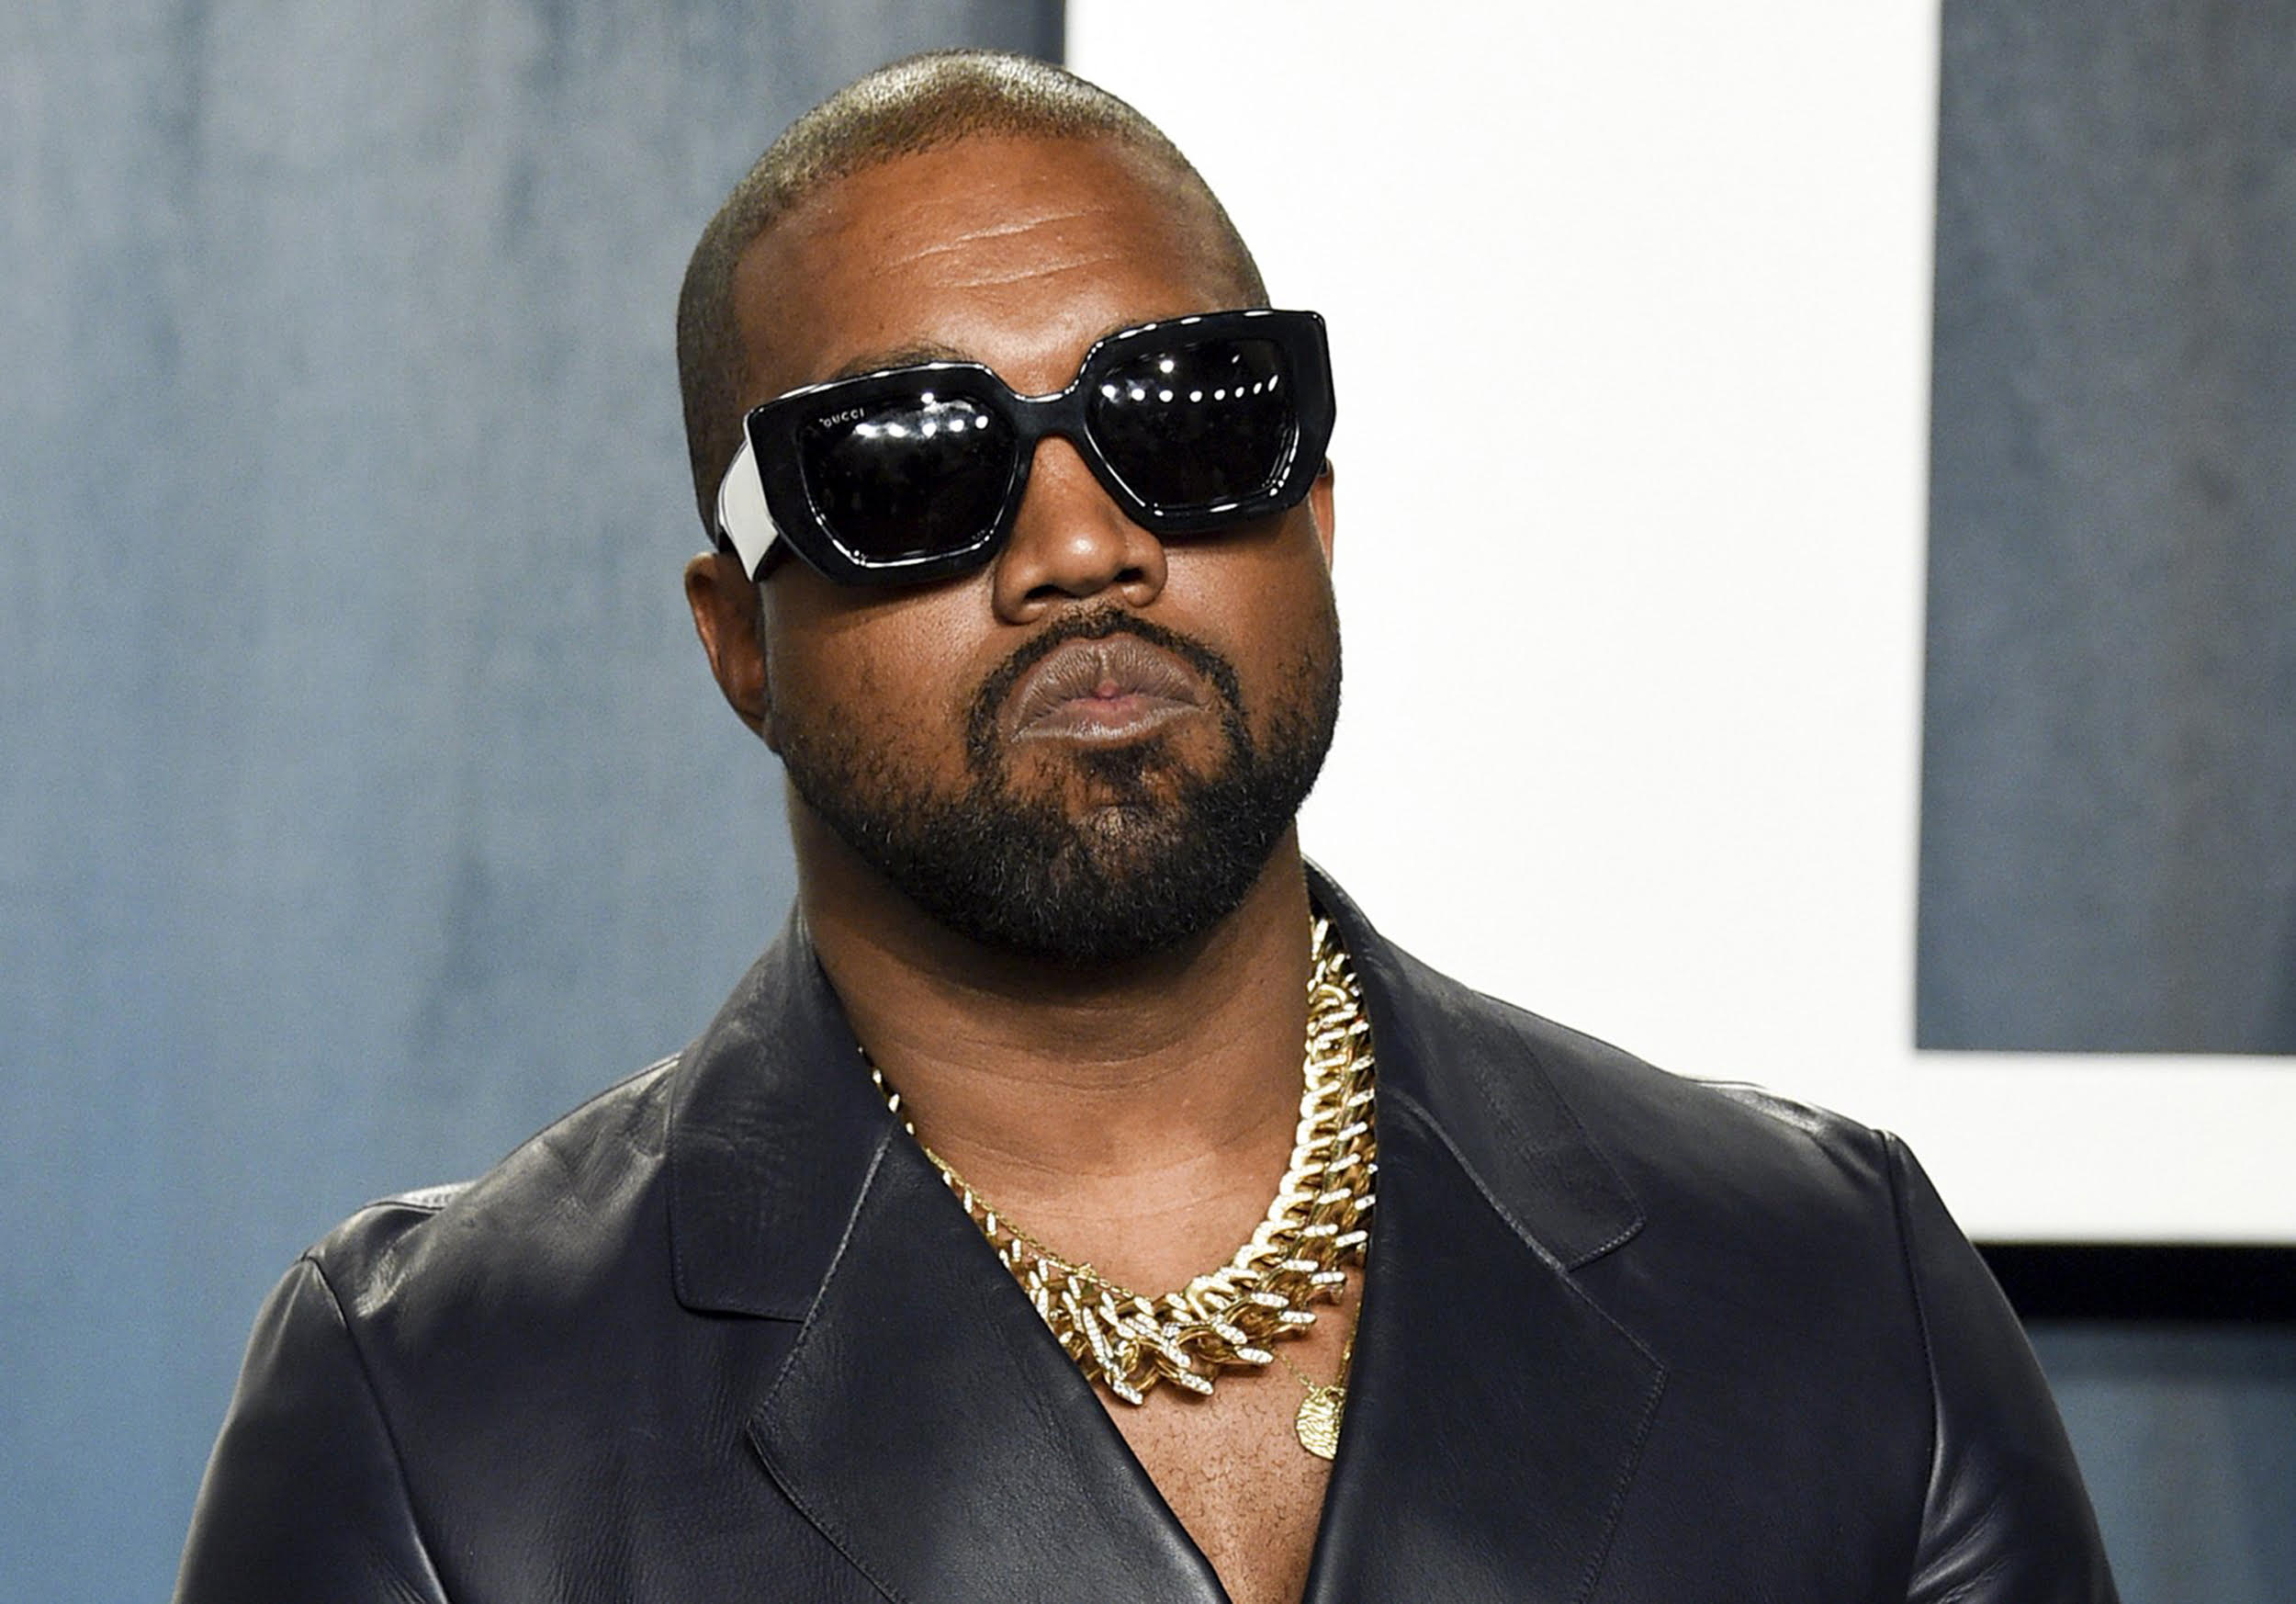 Ο Kanye West τα βάζει με fashion editor που σχολίασε τα ρούχα του και η Gigi Hadid αντιδρά